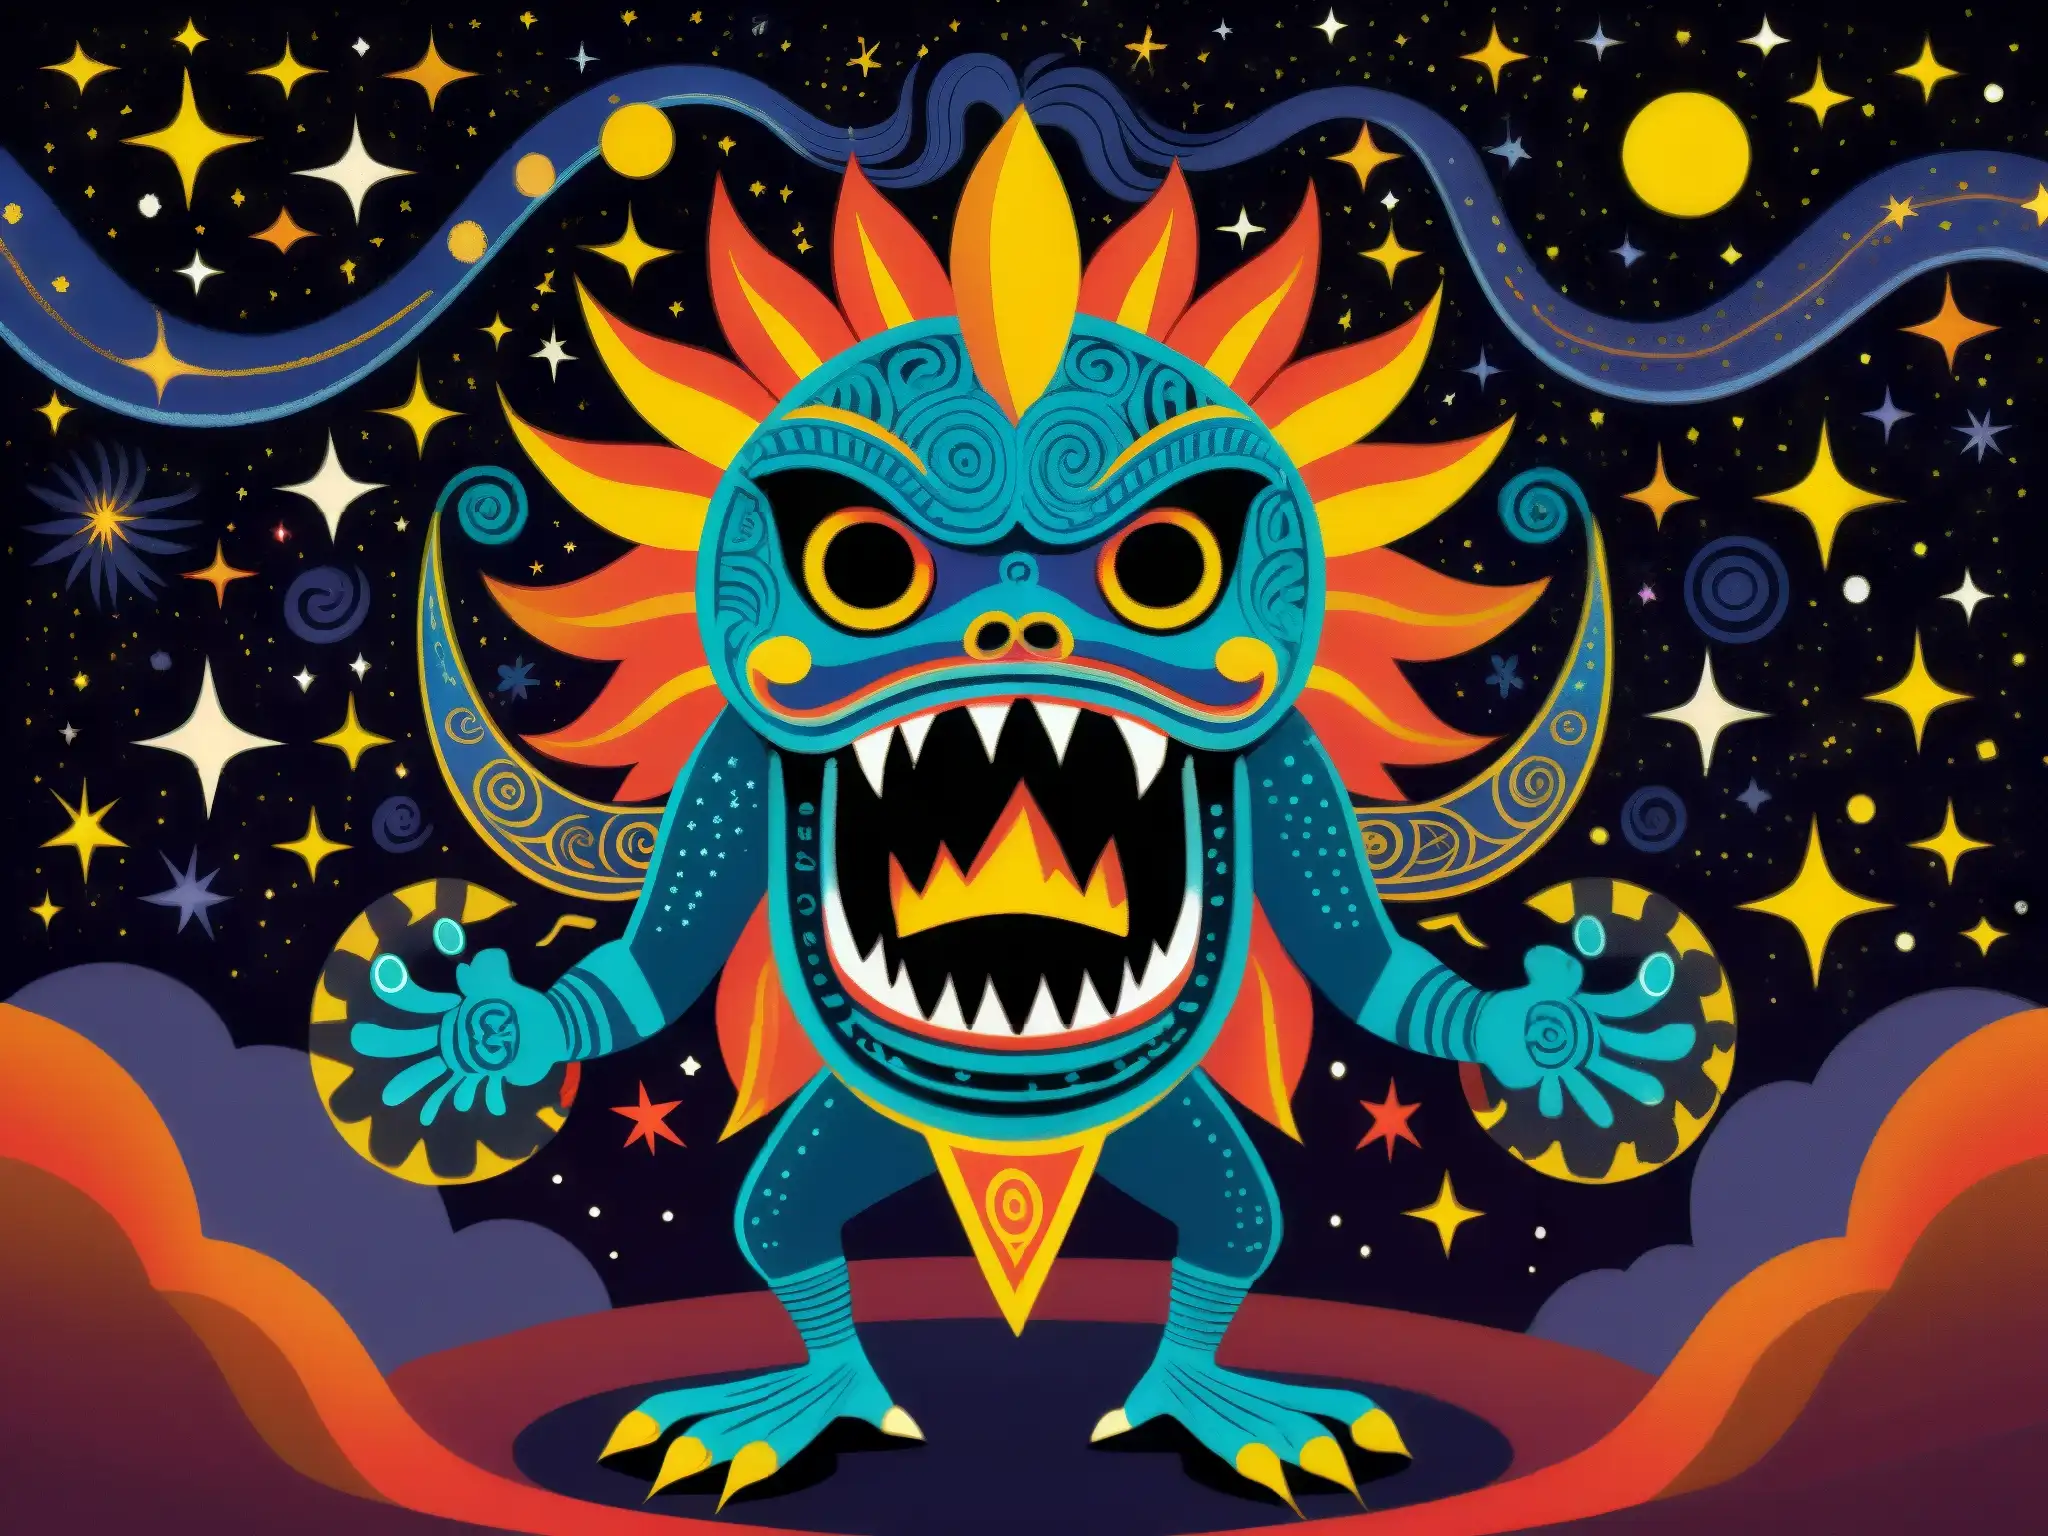 Detalle ilustrado del Tzitzimime, terror cósmico azteca, rodeado de estrellas y figuras humanas, emanando poder y miedo